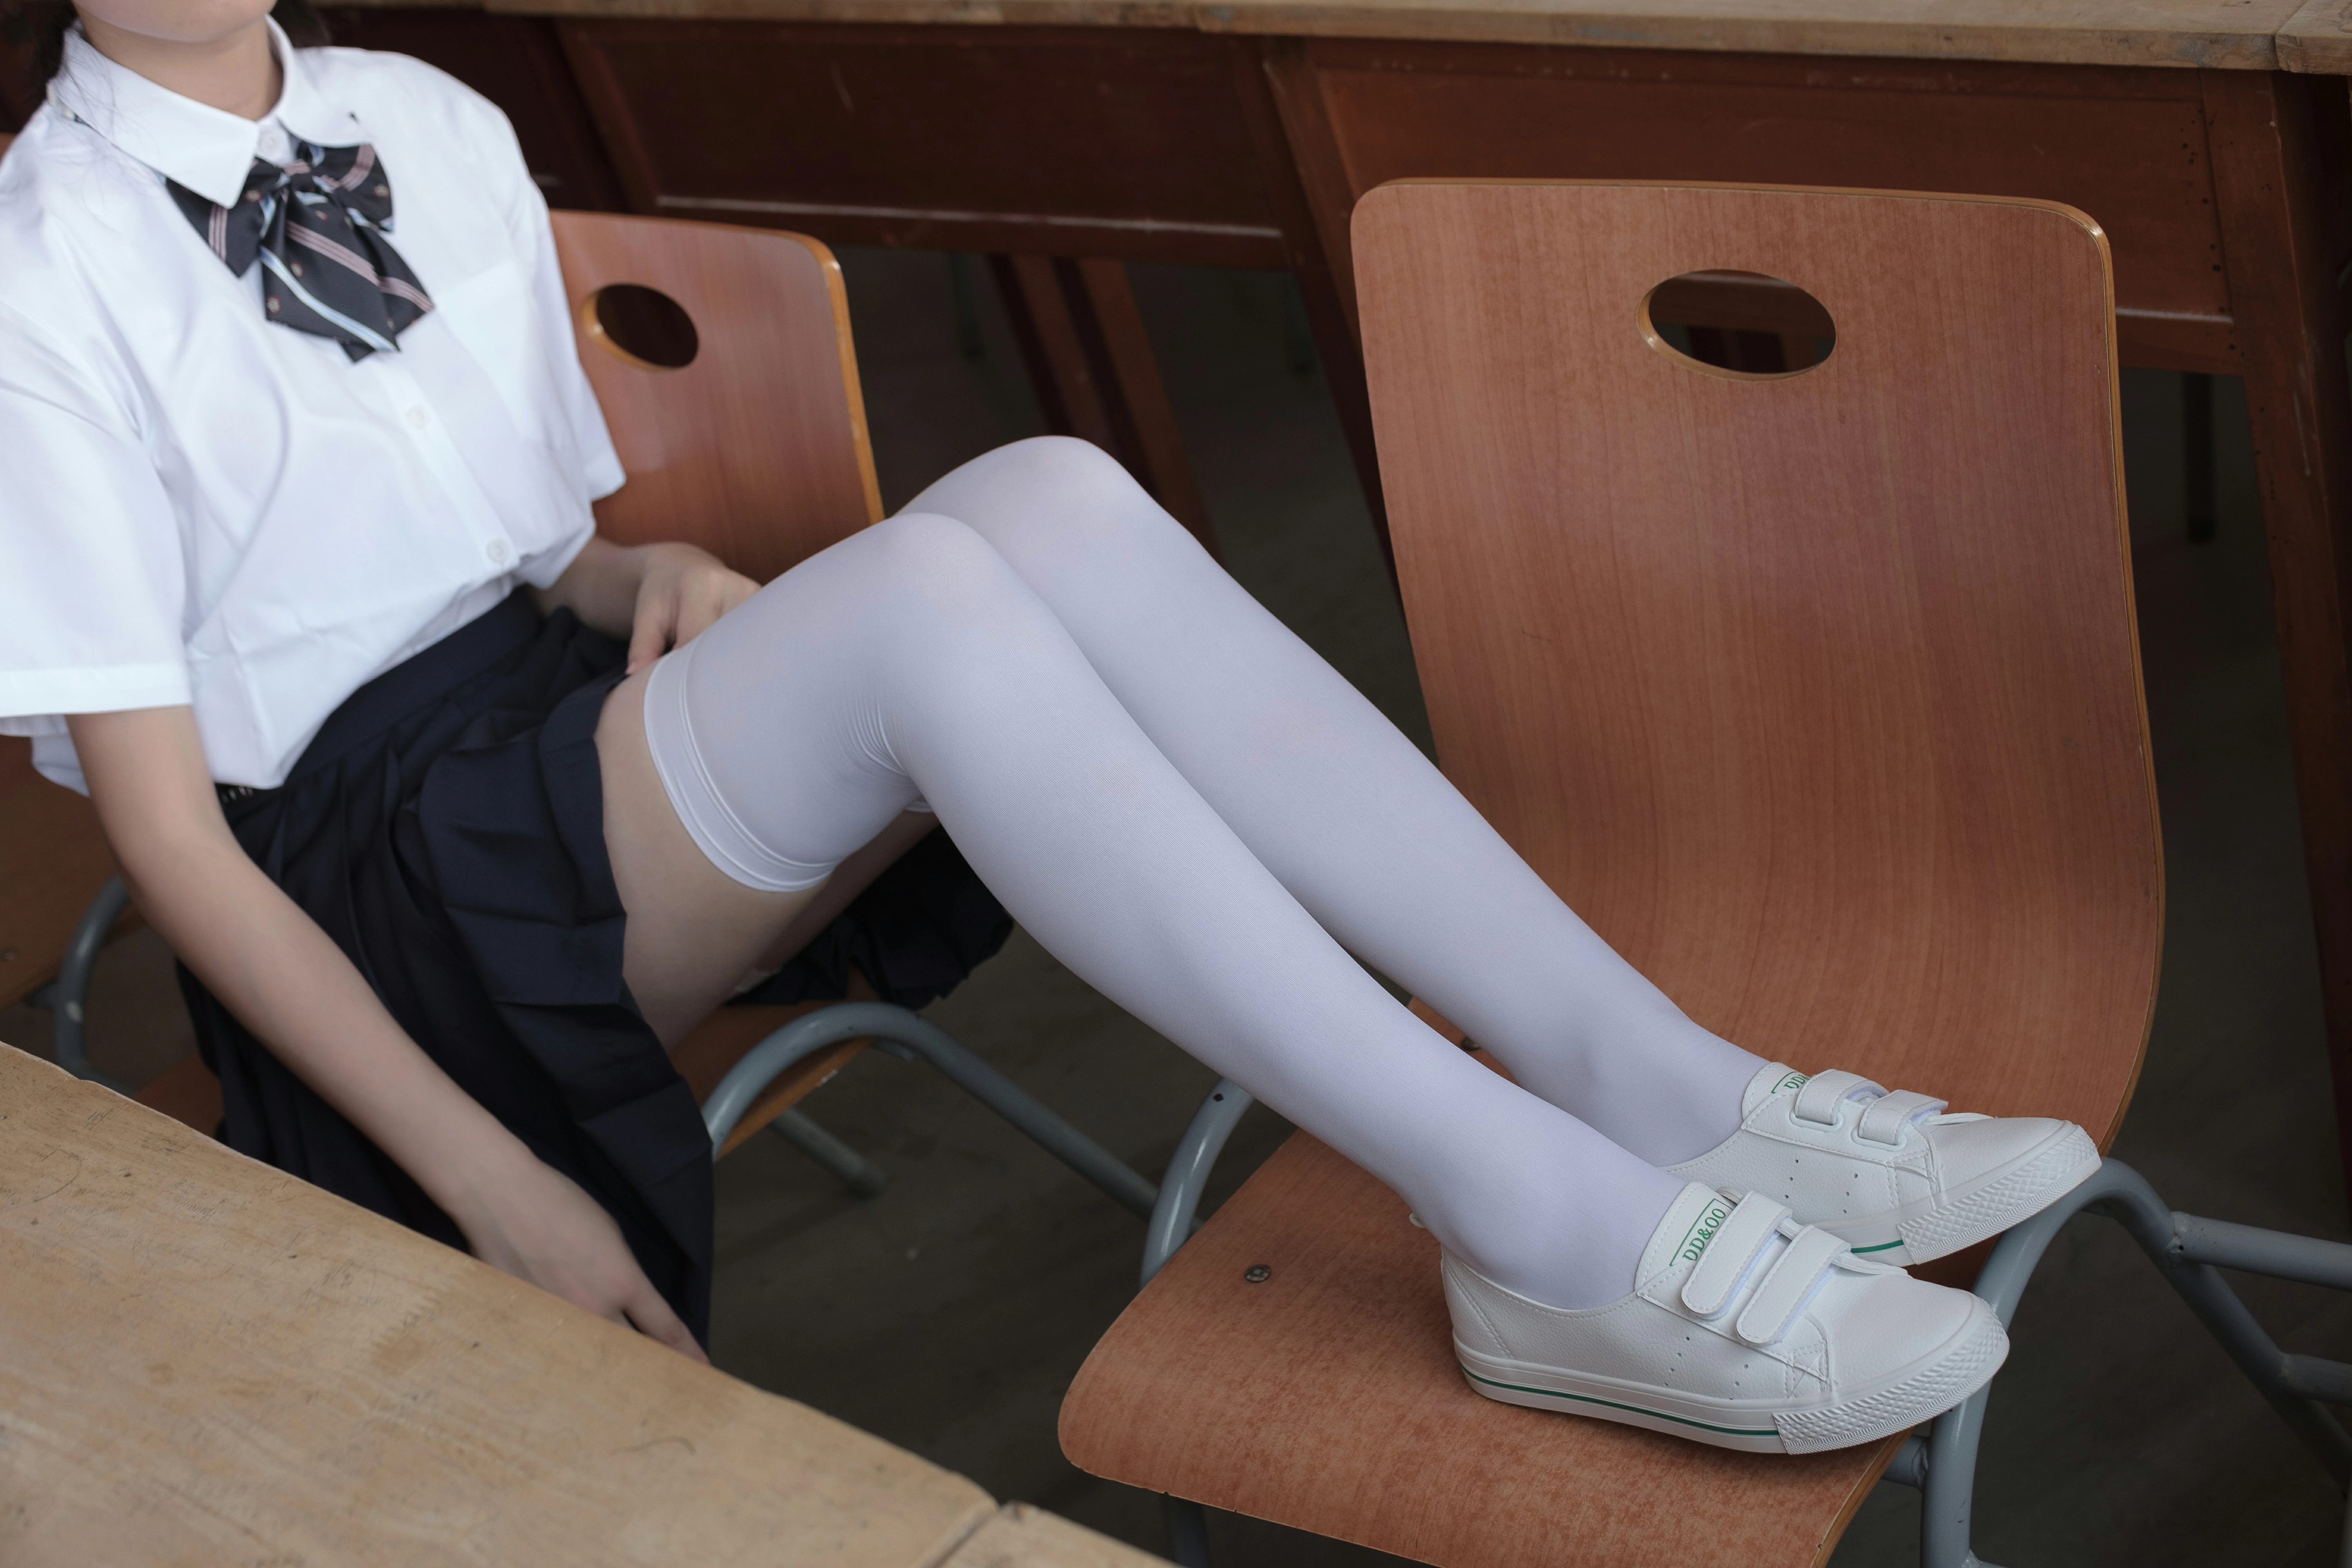 [森萝财团]BETA-022 性感萝莉小学妹 白色短袖制服与黑色短裙加白色丝袜美腿玉足私房写真集,